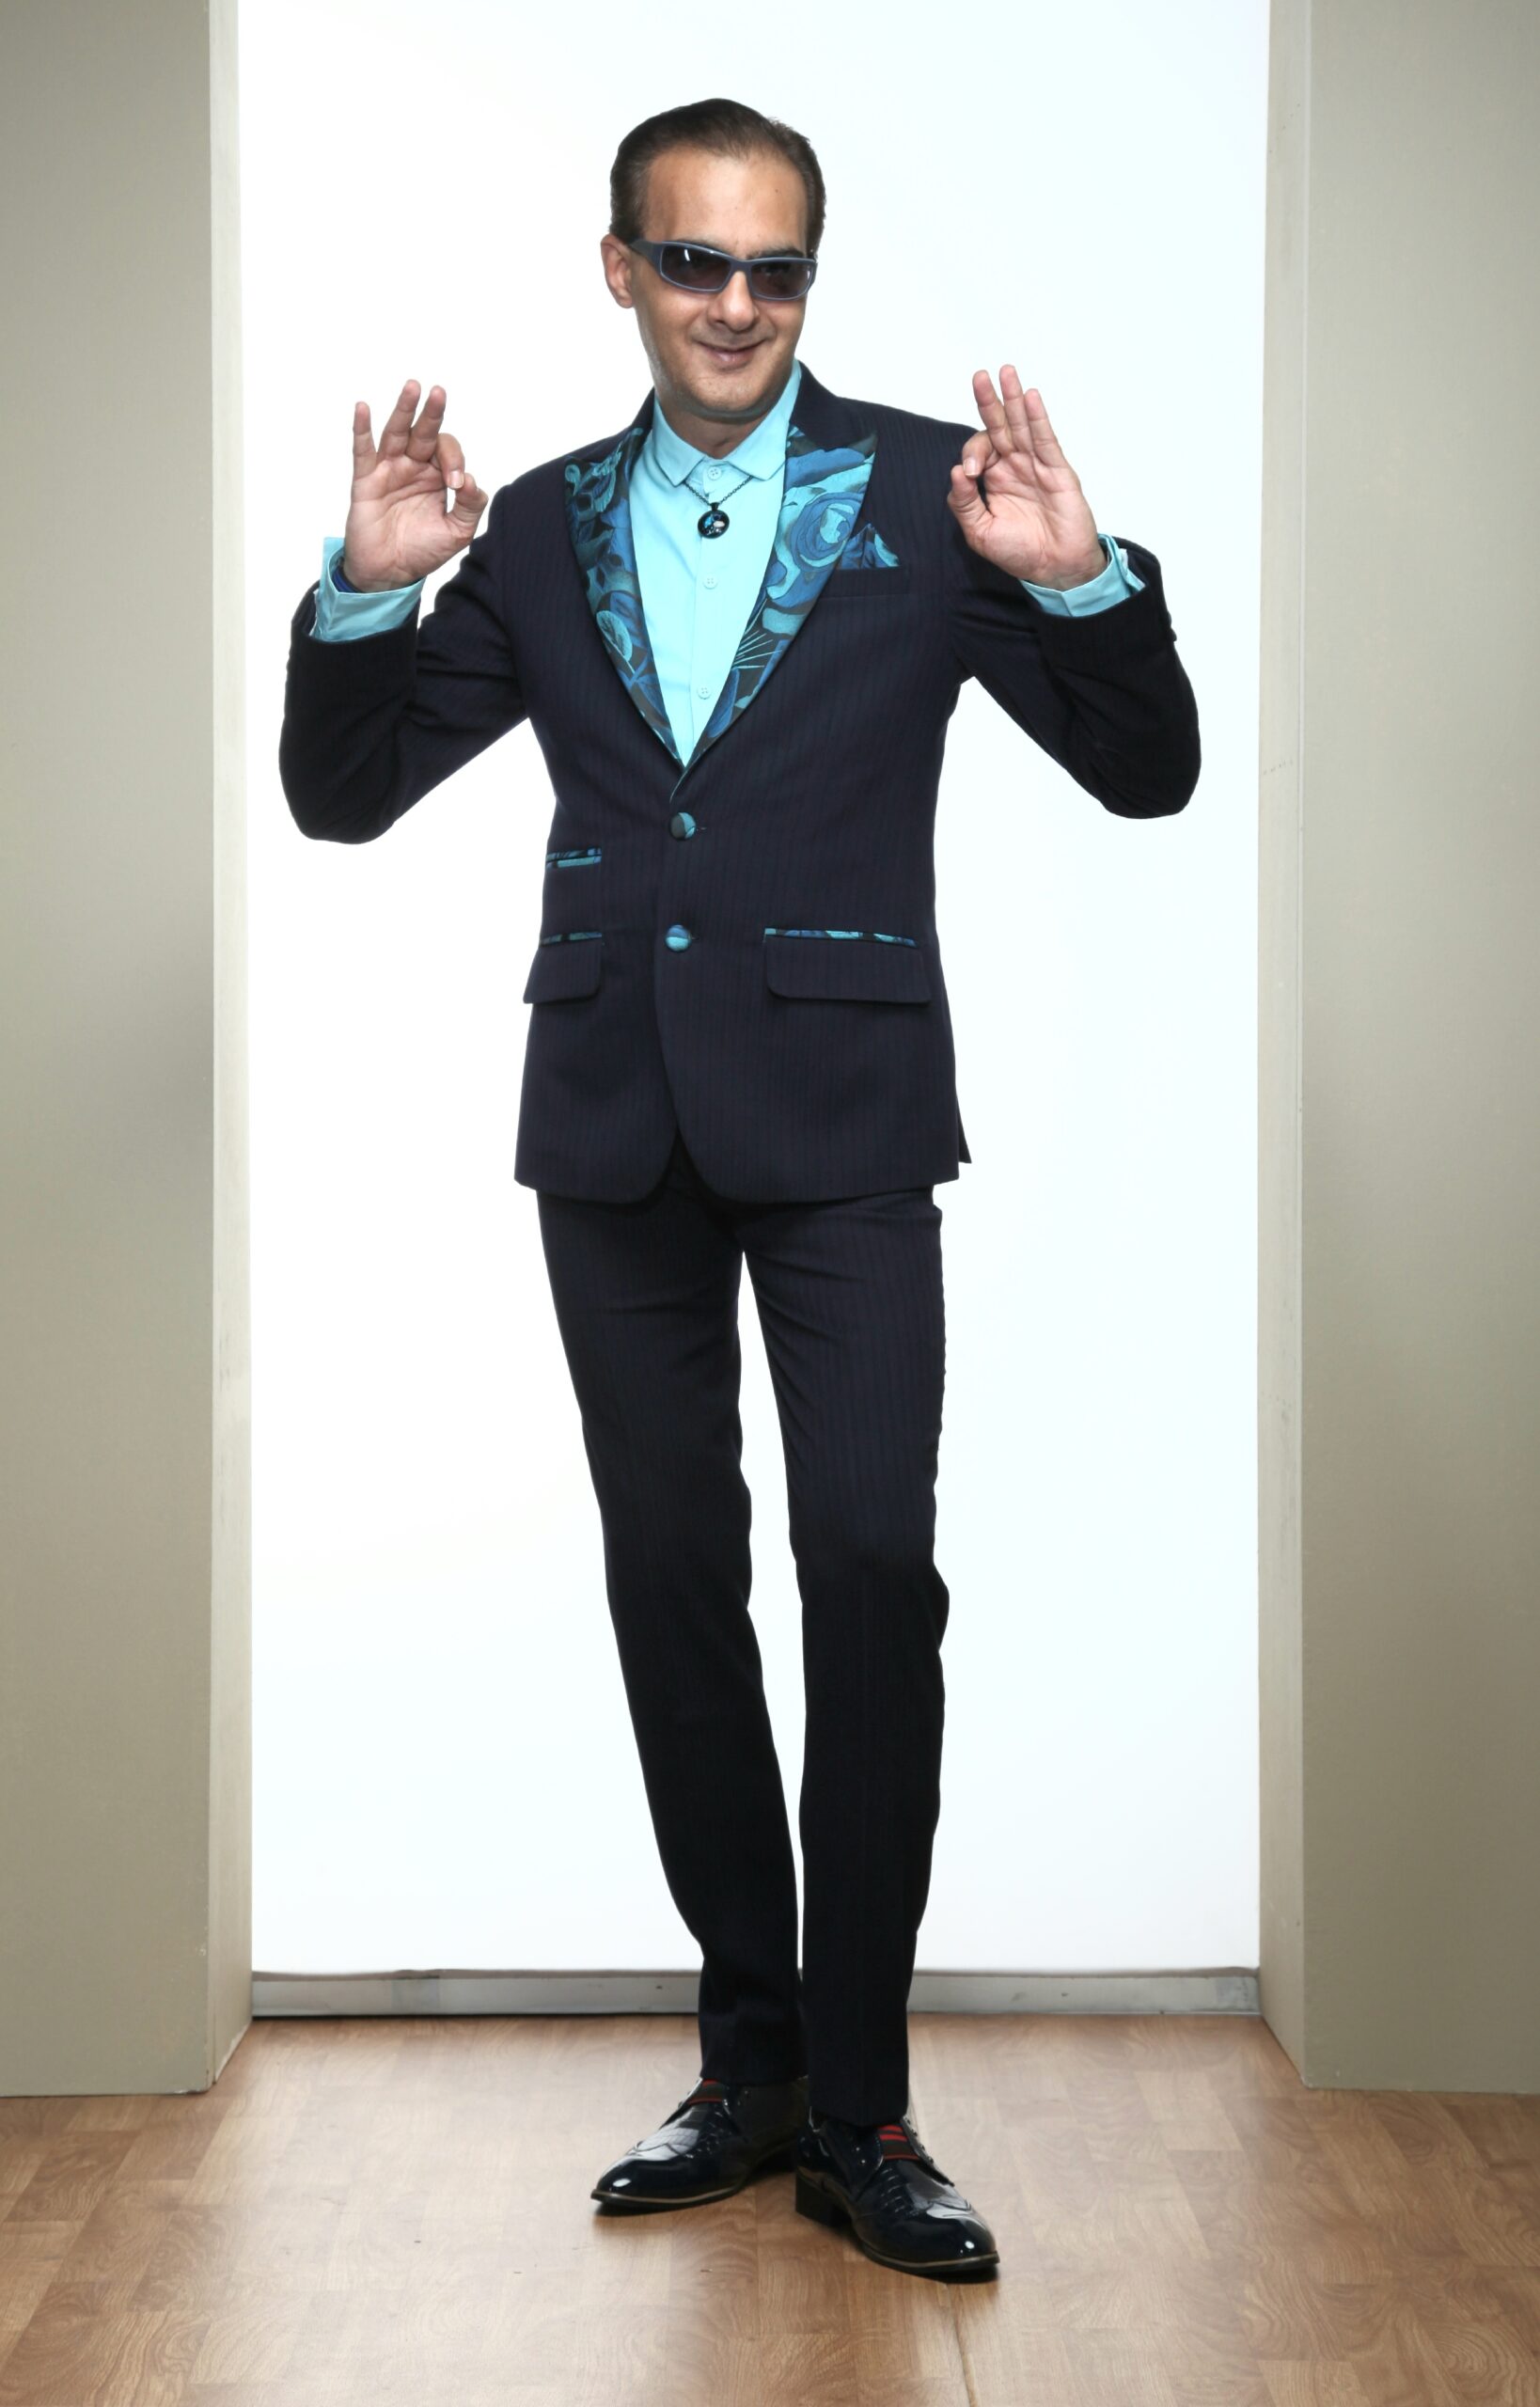 Mst 5068 01 Rent Rental Hire Tuxedo Suit Black Tie Suit Designer Suits Shop Tailor Tailors Singapore Wedding